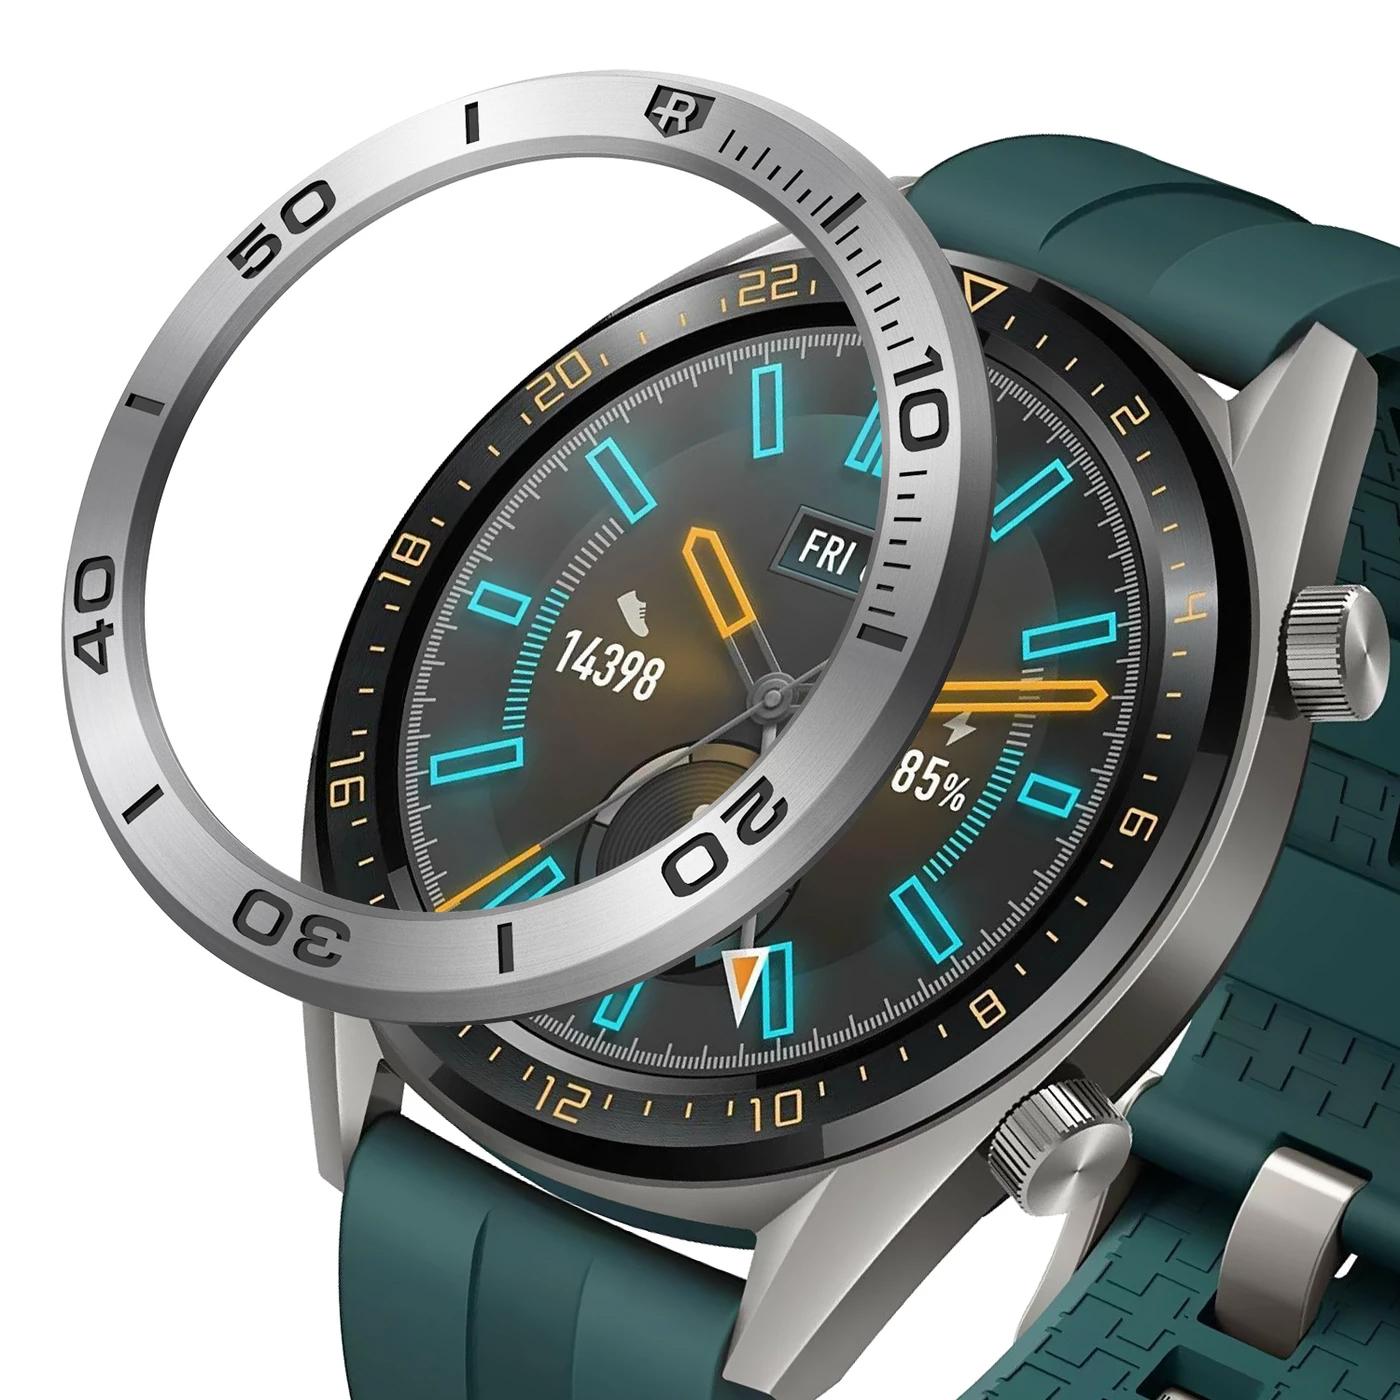 Bezel Styling Huawei Watch GT Plata